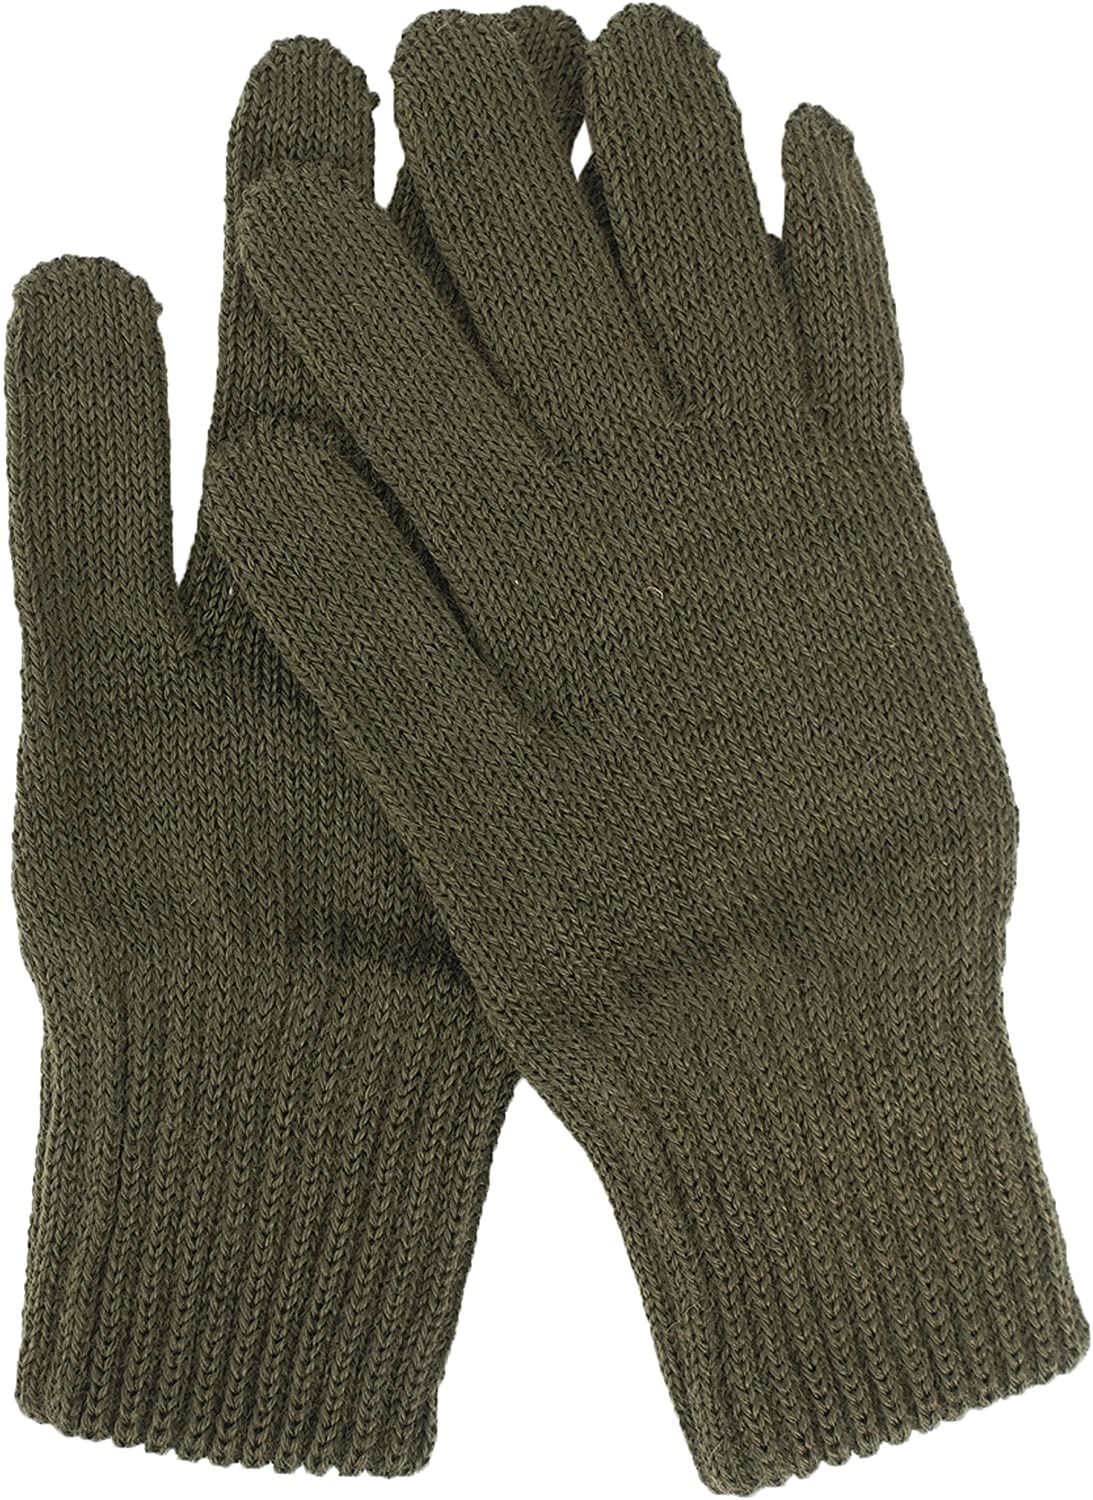 AO Tactical Gear Original Belgian Army woolen gloves - OD